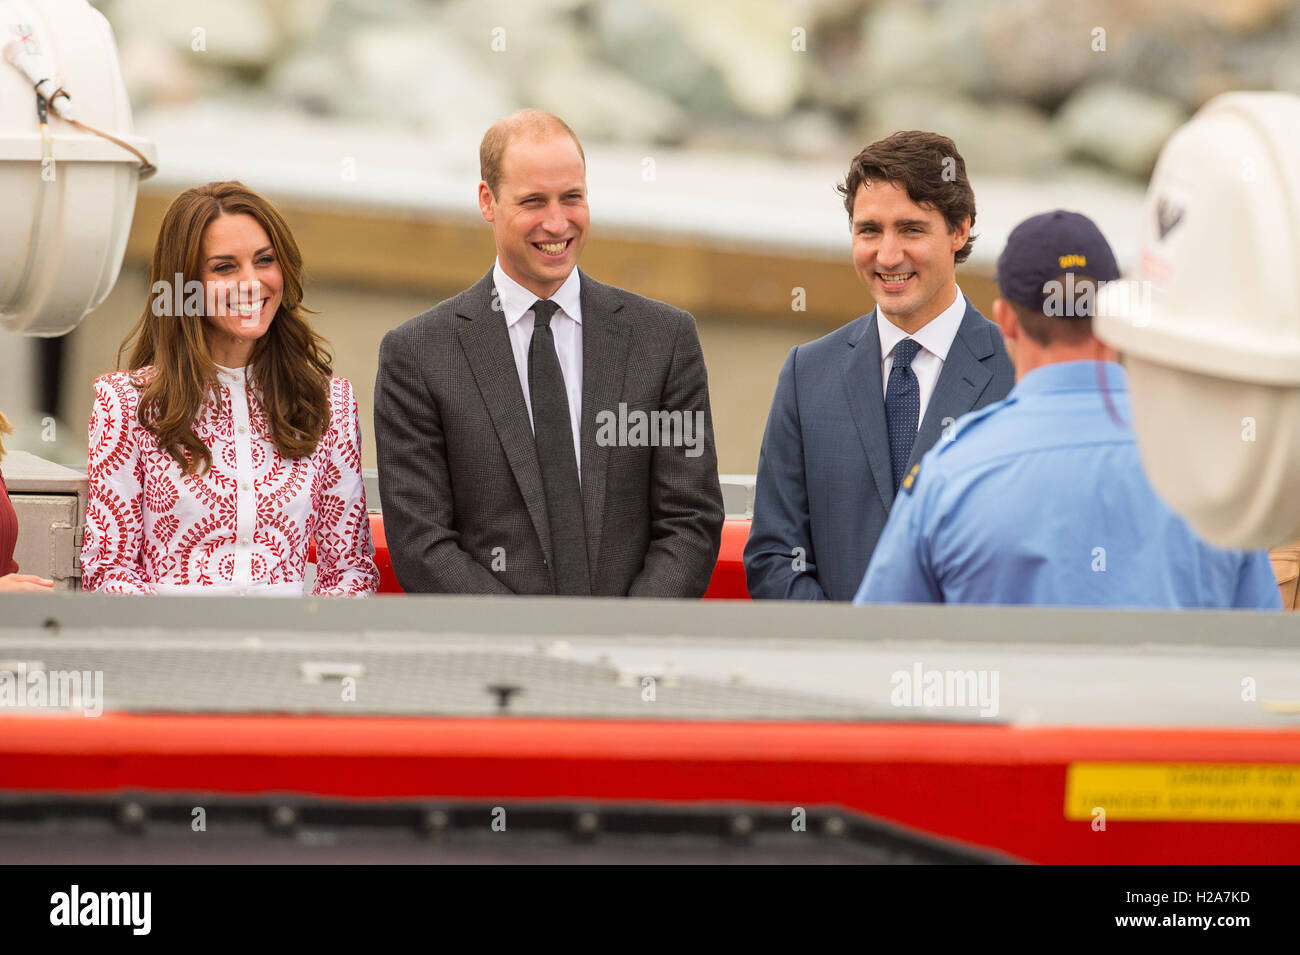 El Duque y Duquesa de Cambridge con el Primer Ministro de Canadá Justin Trudeau a bordo de un aerodeslizador durante una visita a la estación de Guardacostas Kitsilano en Vancouver, Canadá, durante la segunda jornada de la visita real a Canadá. Foto de stock